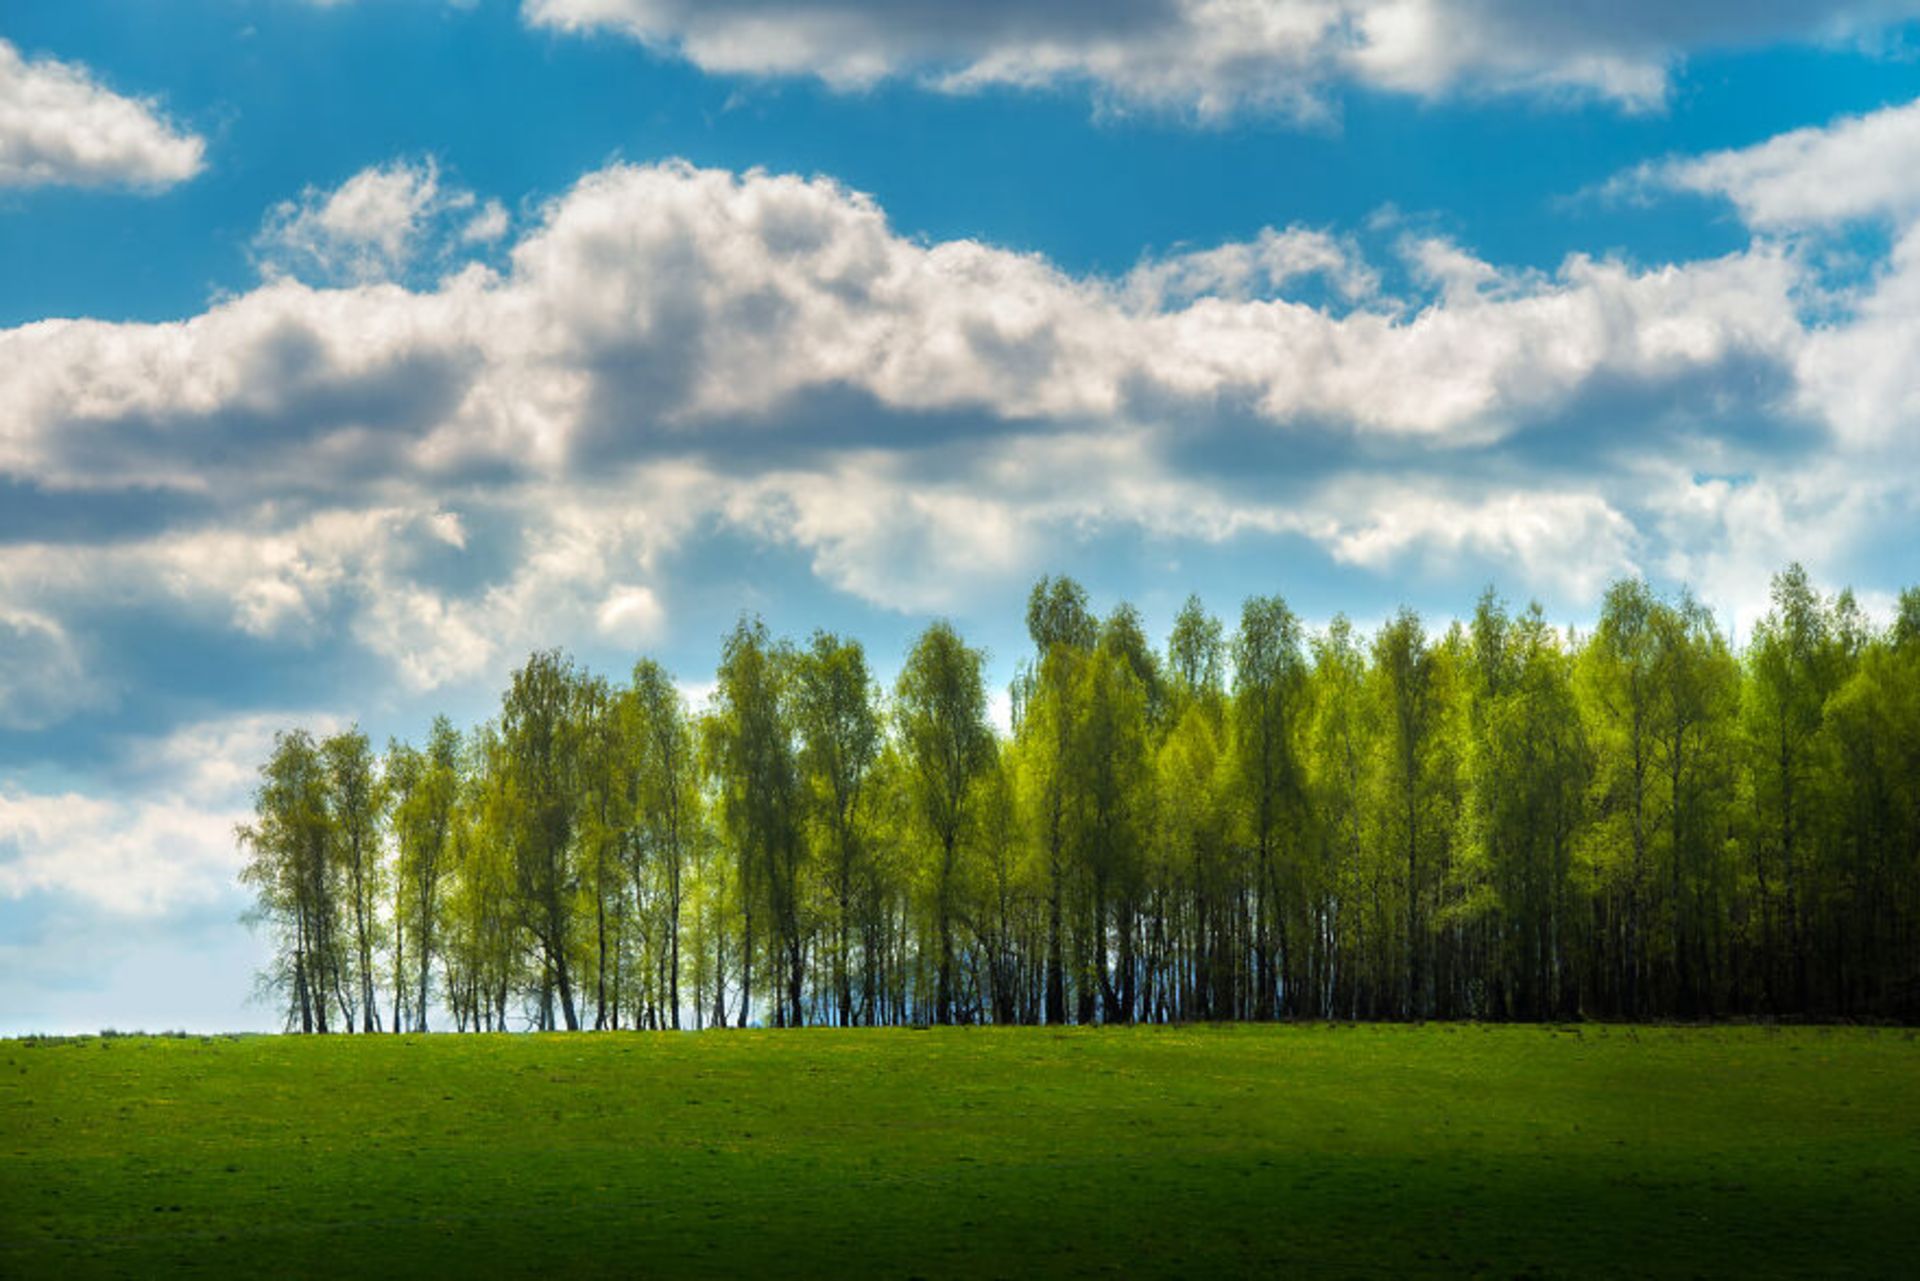 درختان در دشت سبز آسمان پر ابر